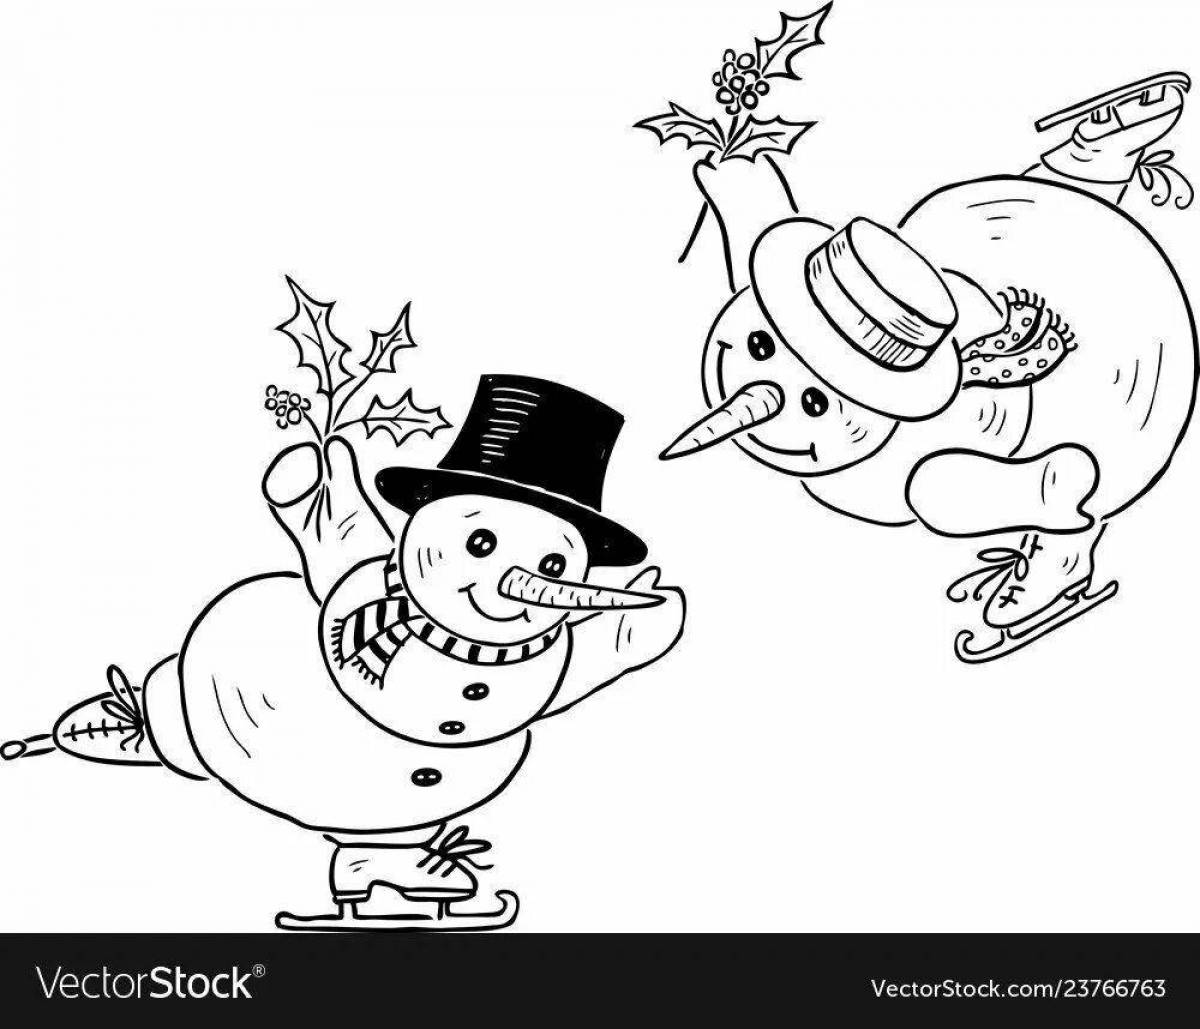 Праздничная раскраска снеговик на коньках для детей